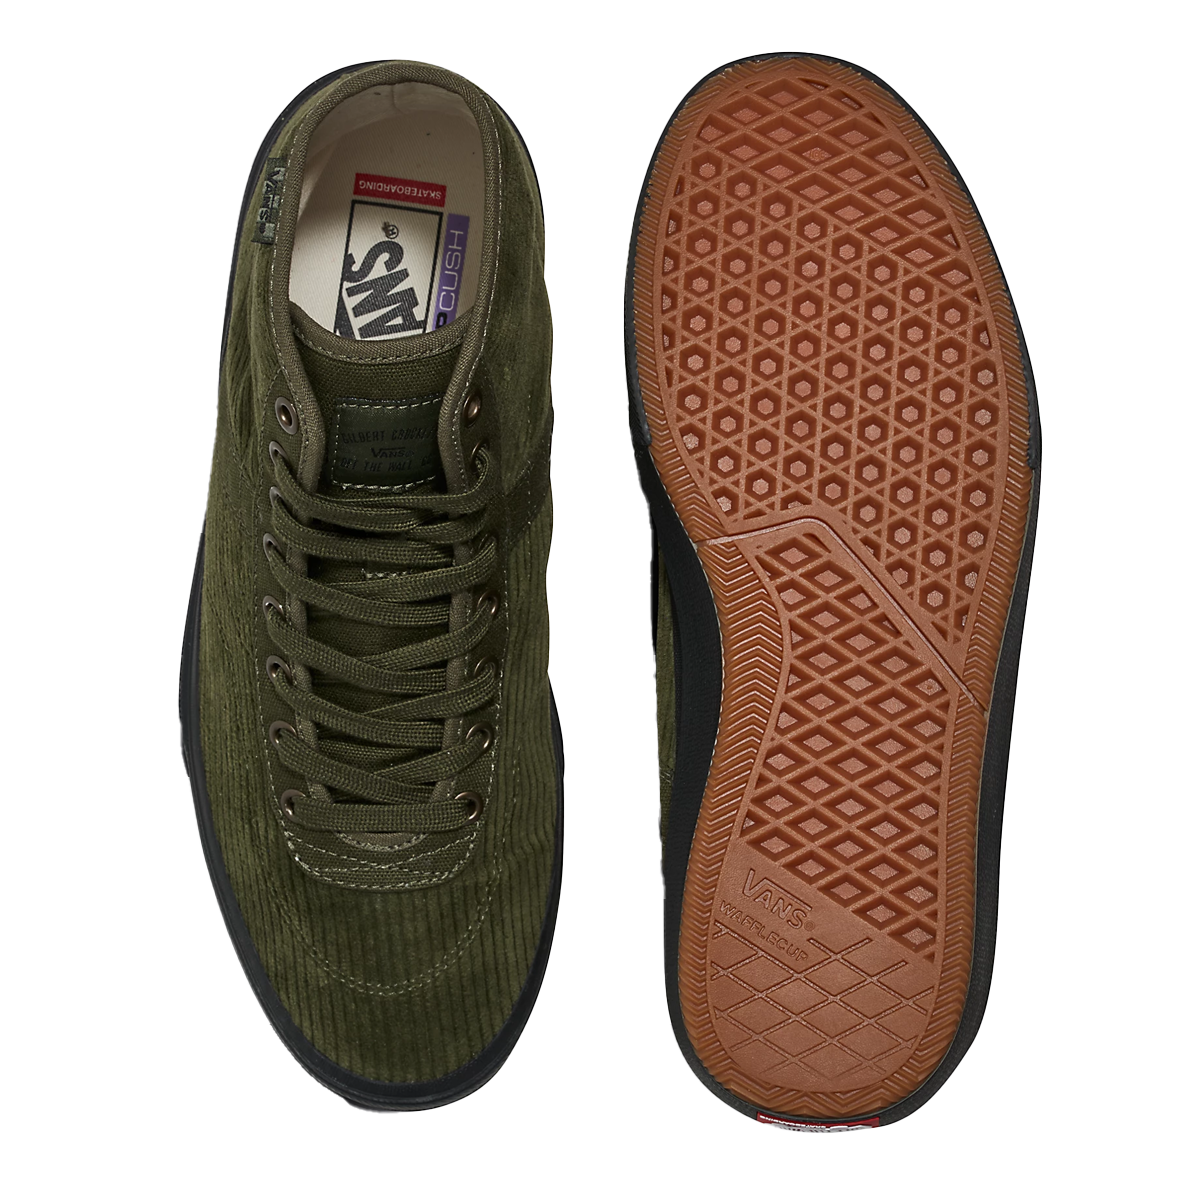 Puma SUEDE XL UNISEX - Zapatillas skate - dark olive/white/verde